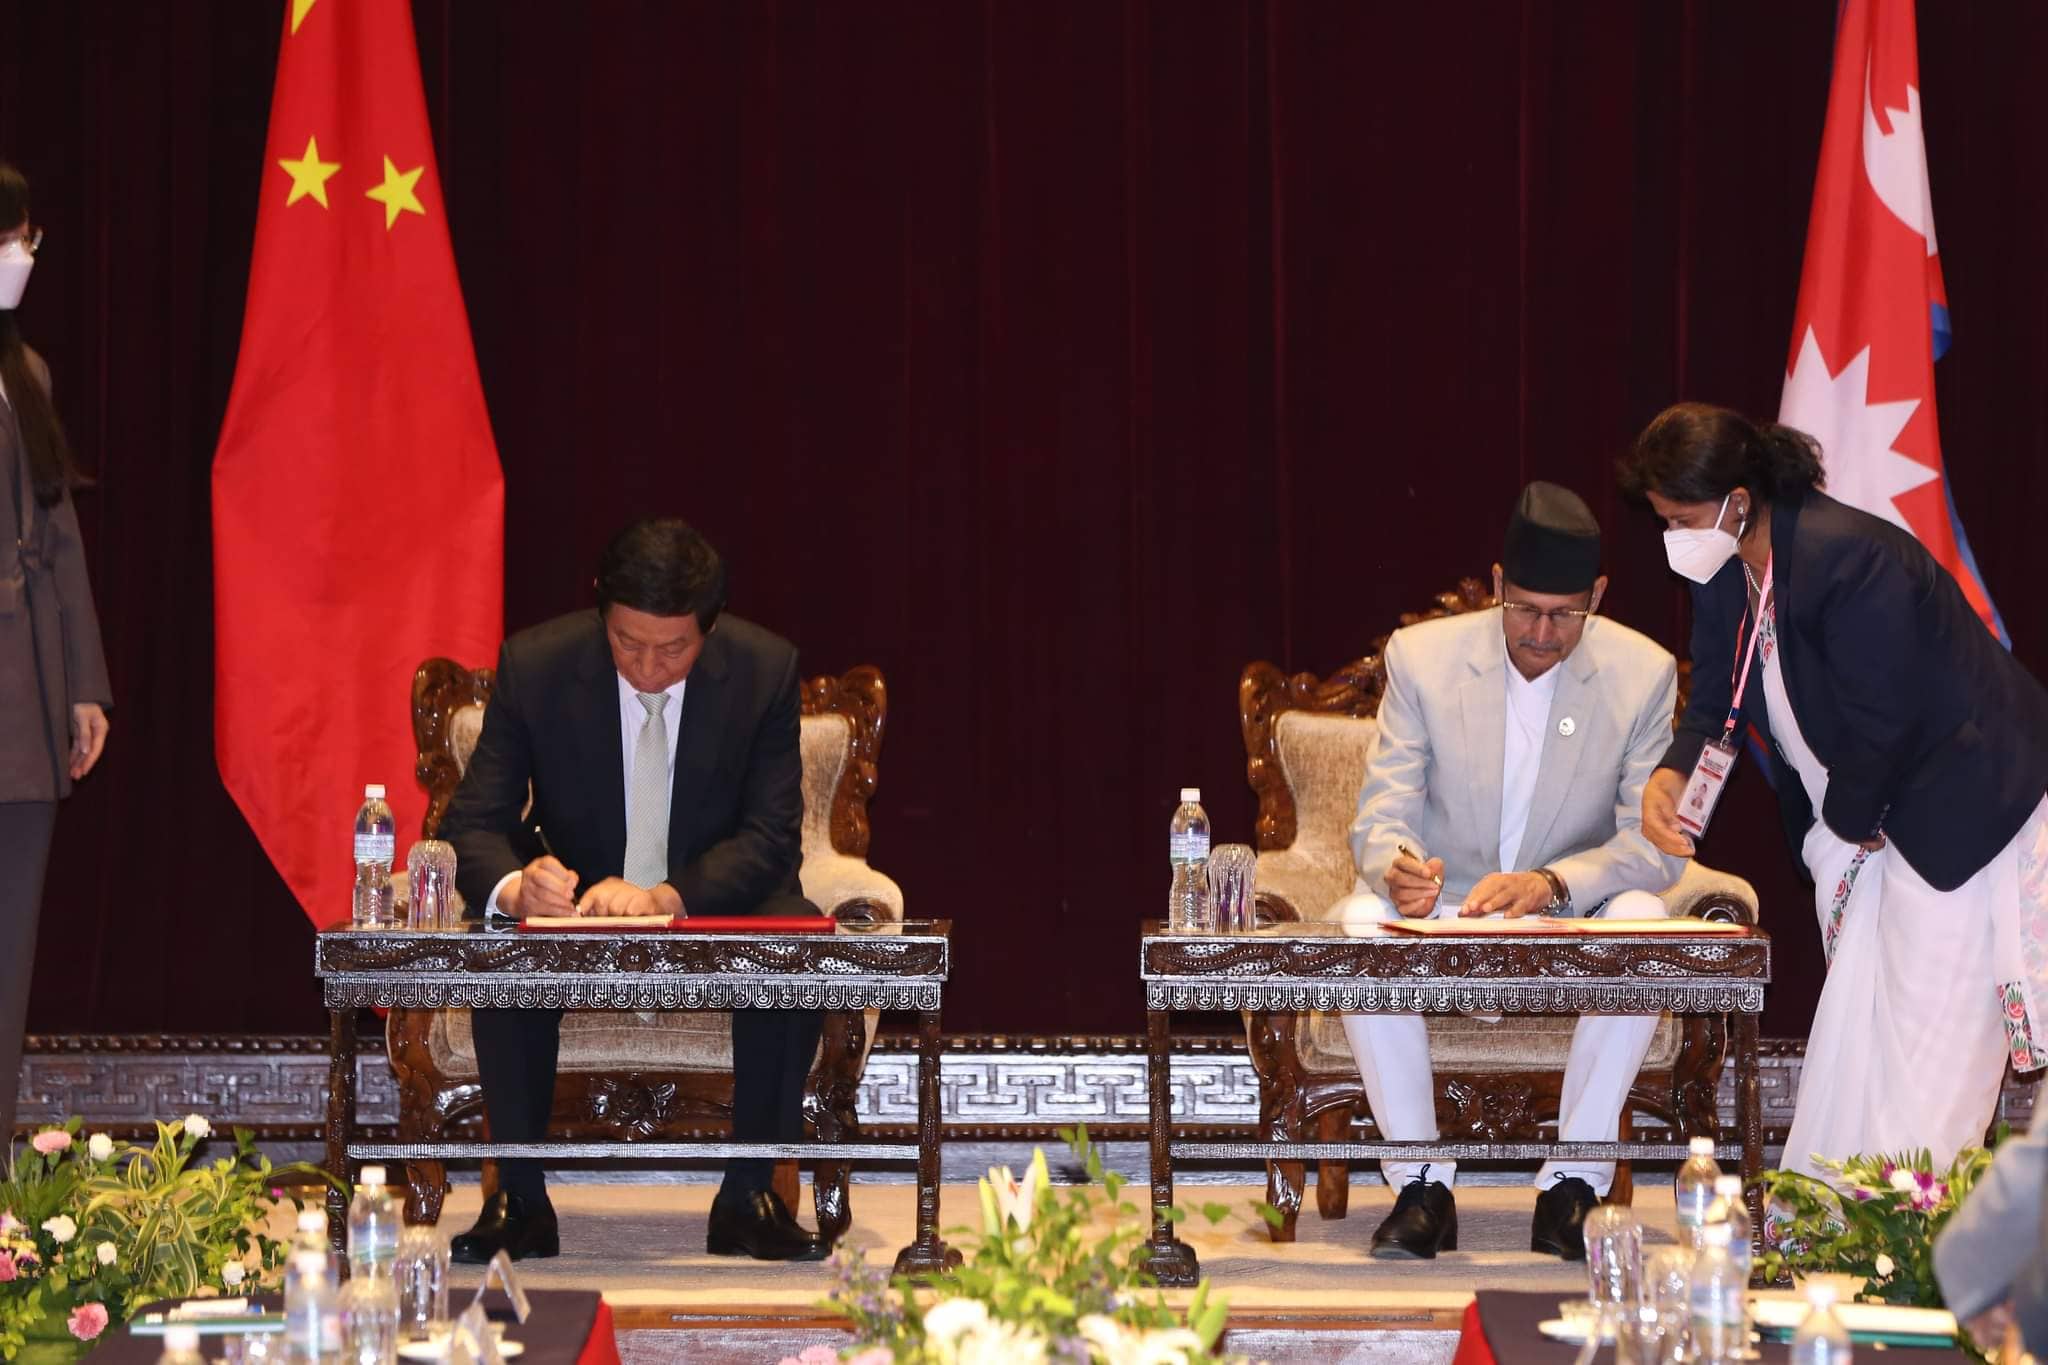 नेपाल र चीनबीच अन्तरसंसदीय सहयोगसम्बन्धी सम्झौतापत्रमा हस्ताक्षर